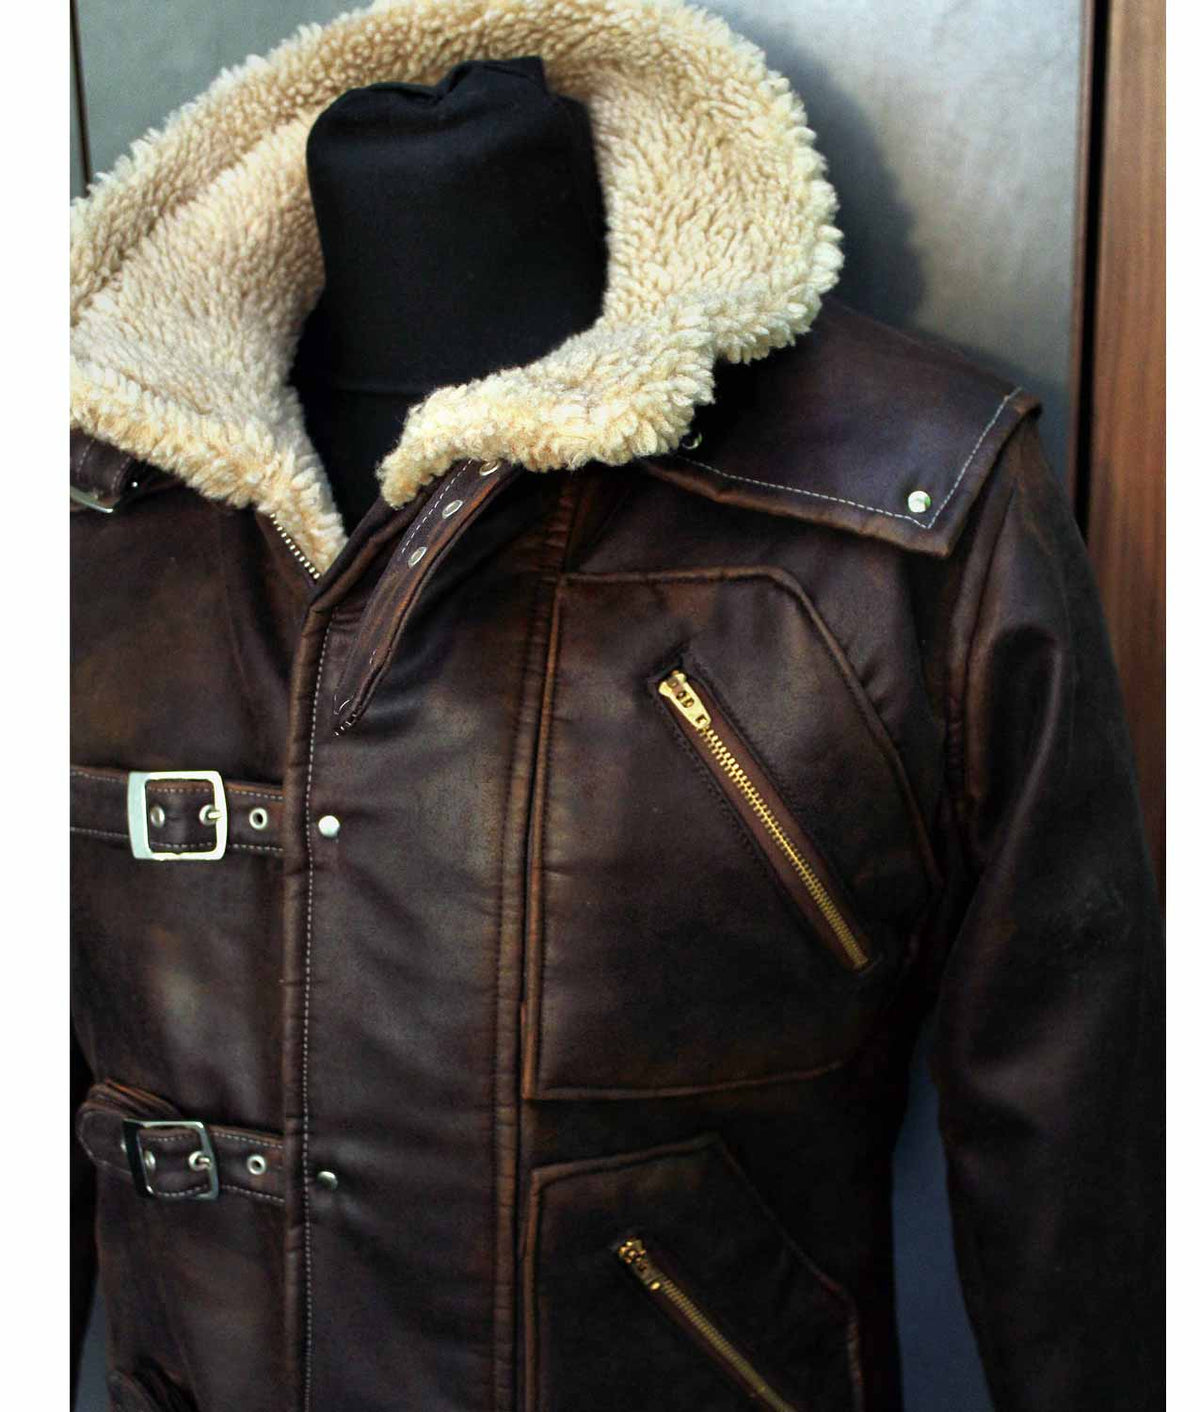 BJ Blazkowicz Wolfenstein Designer Leather Jacket